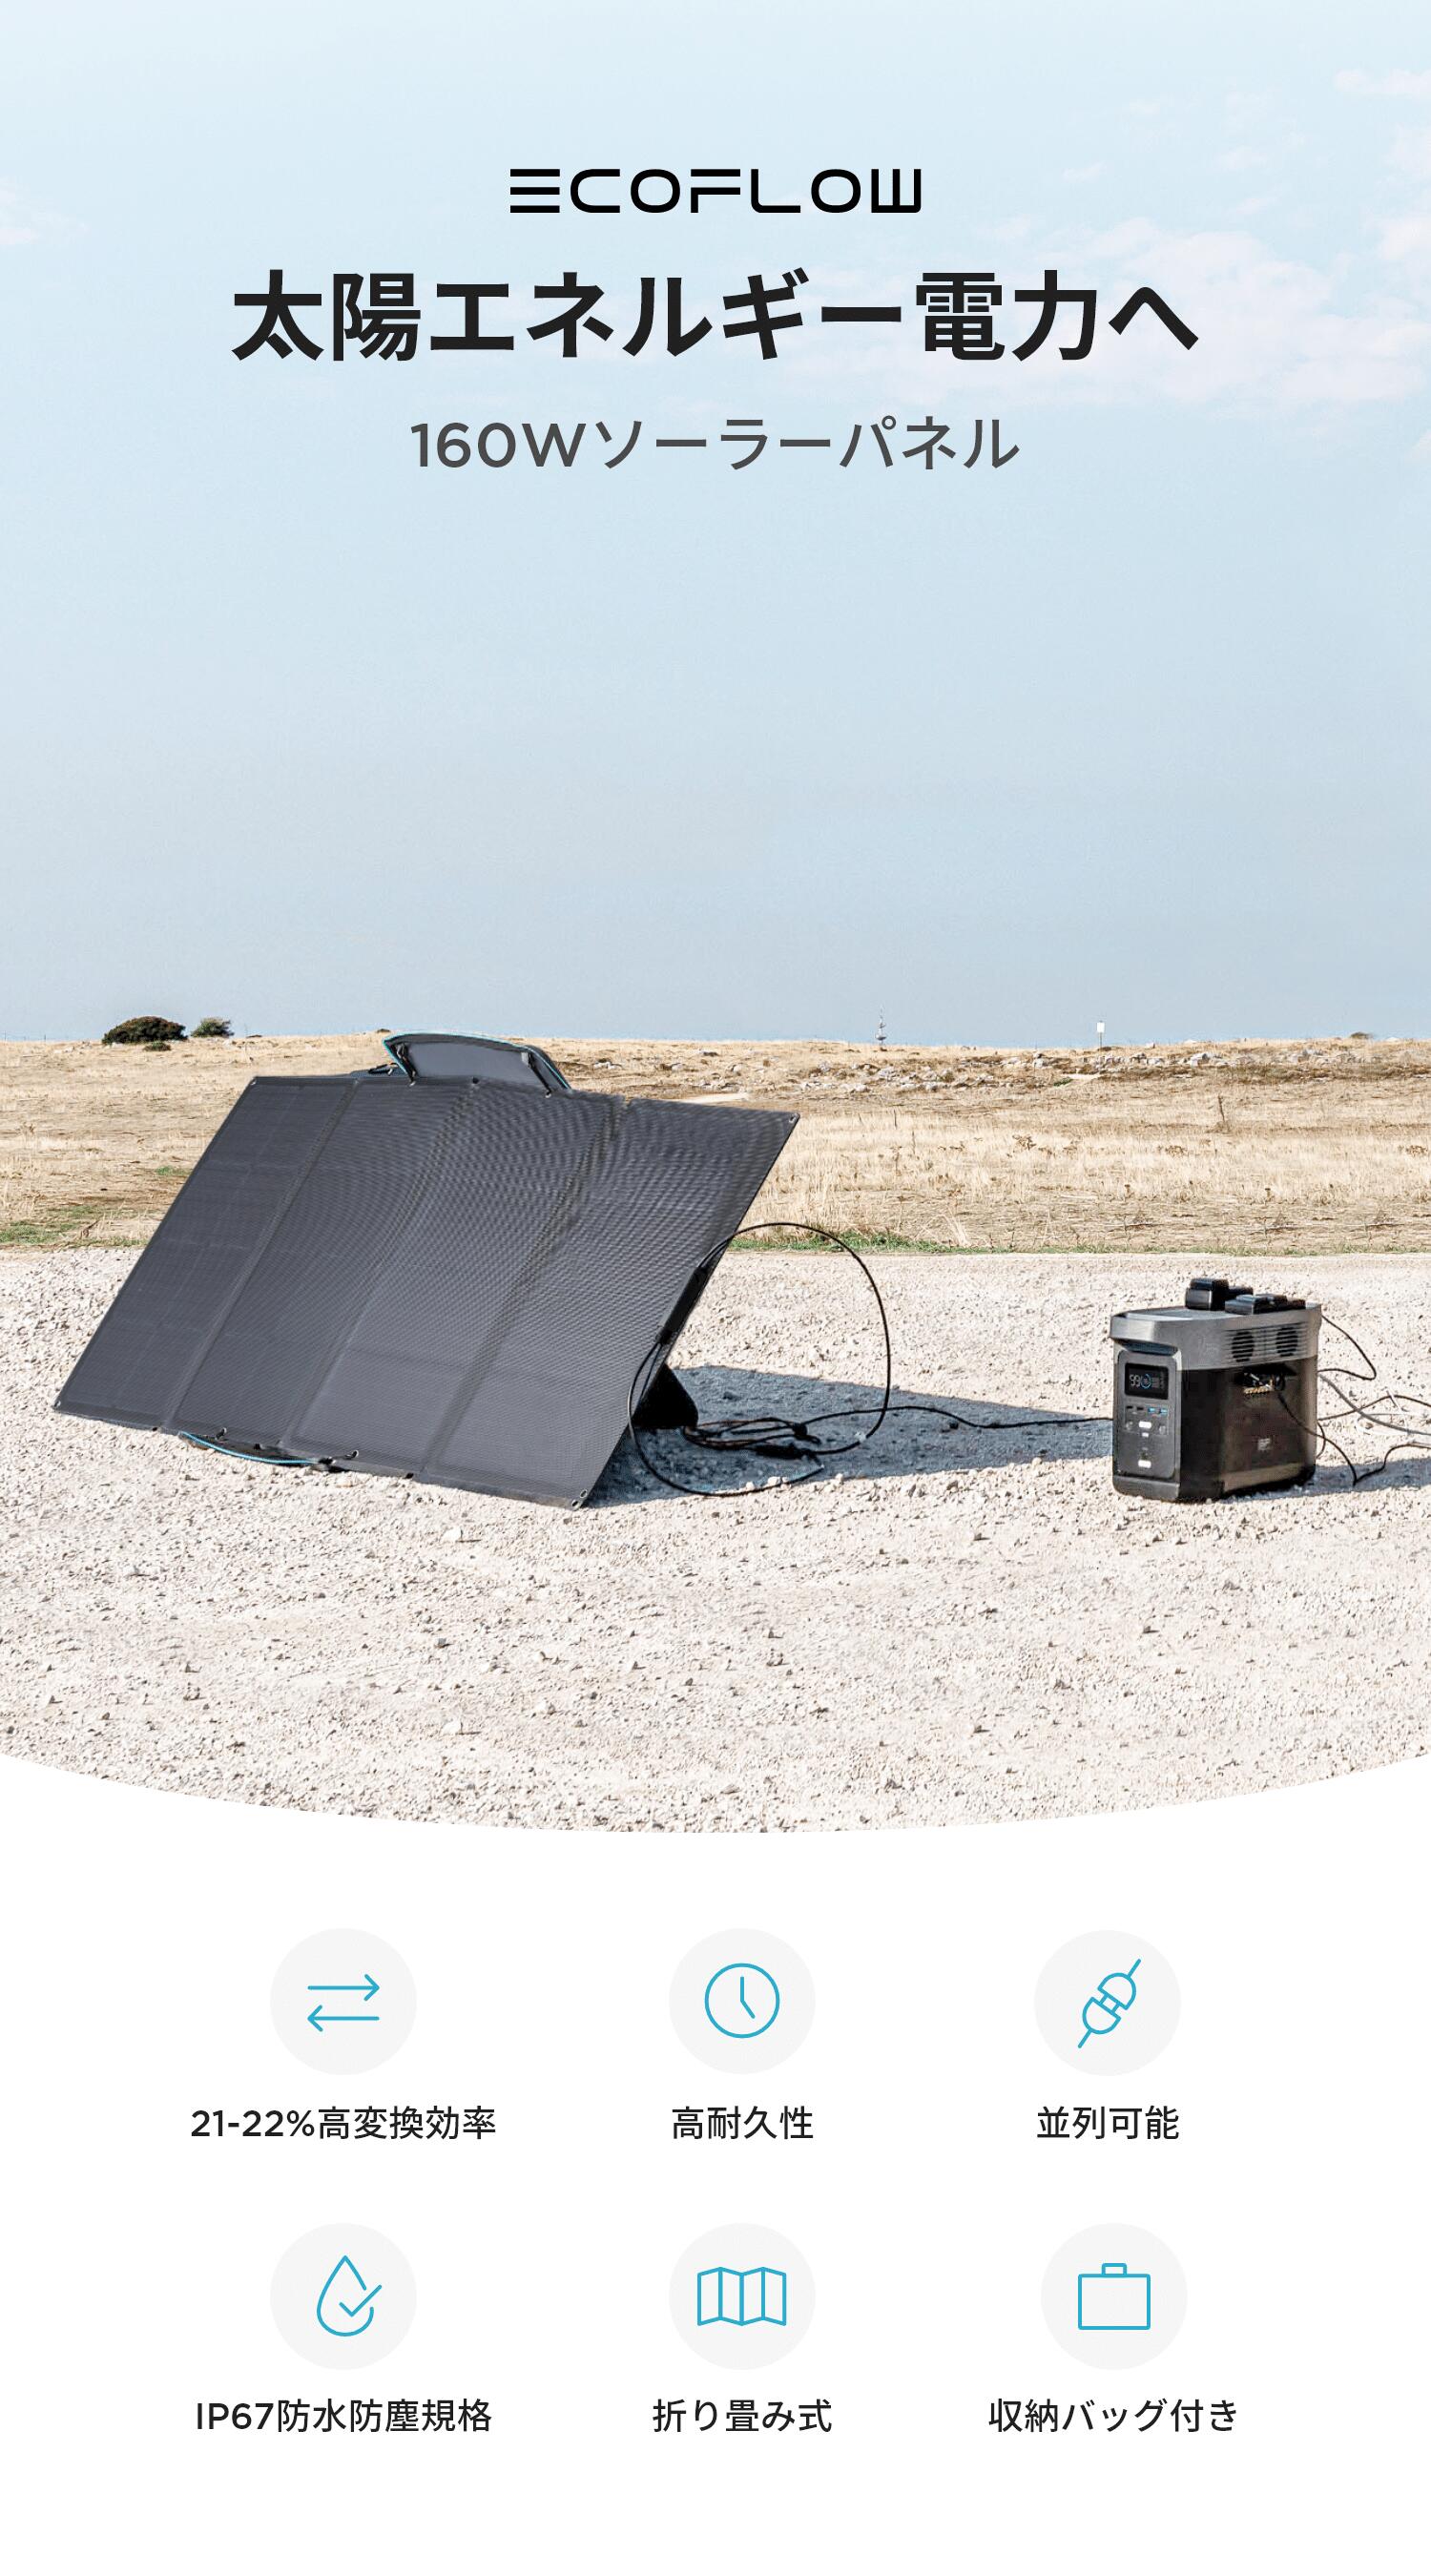 【安心の公式ショップ】ソーラーパネル 折り畳み ポータブル電源 ソーラー充電 防災グッズ キャ…(42,900円 / EcoFlow公式楽天